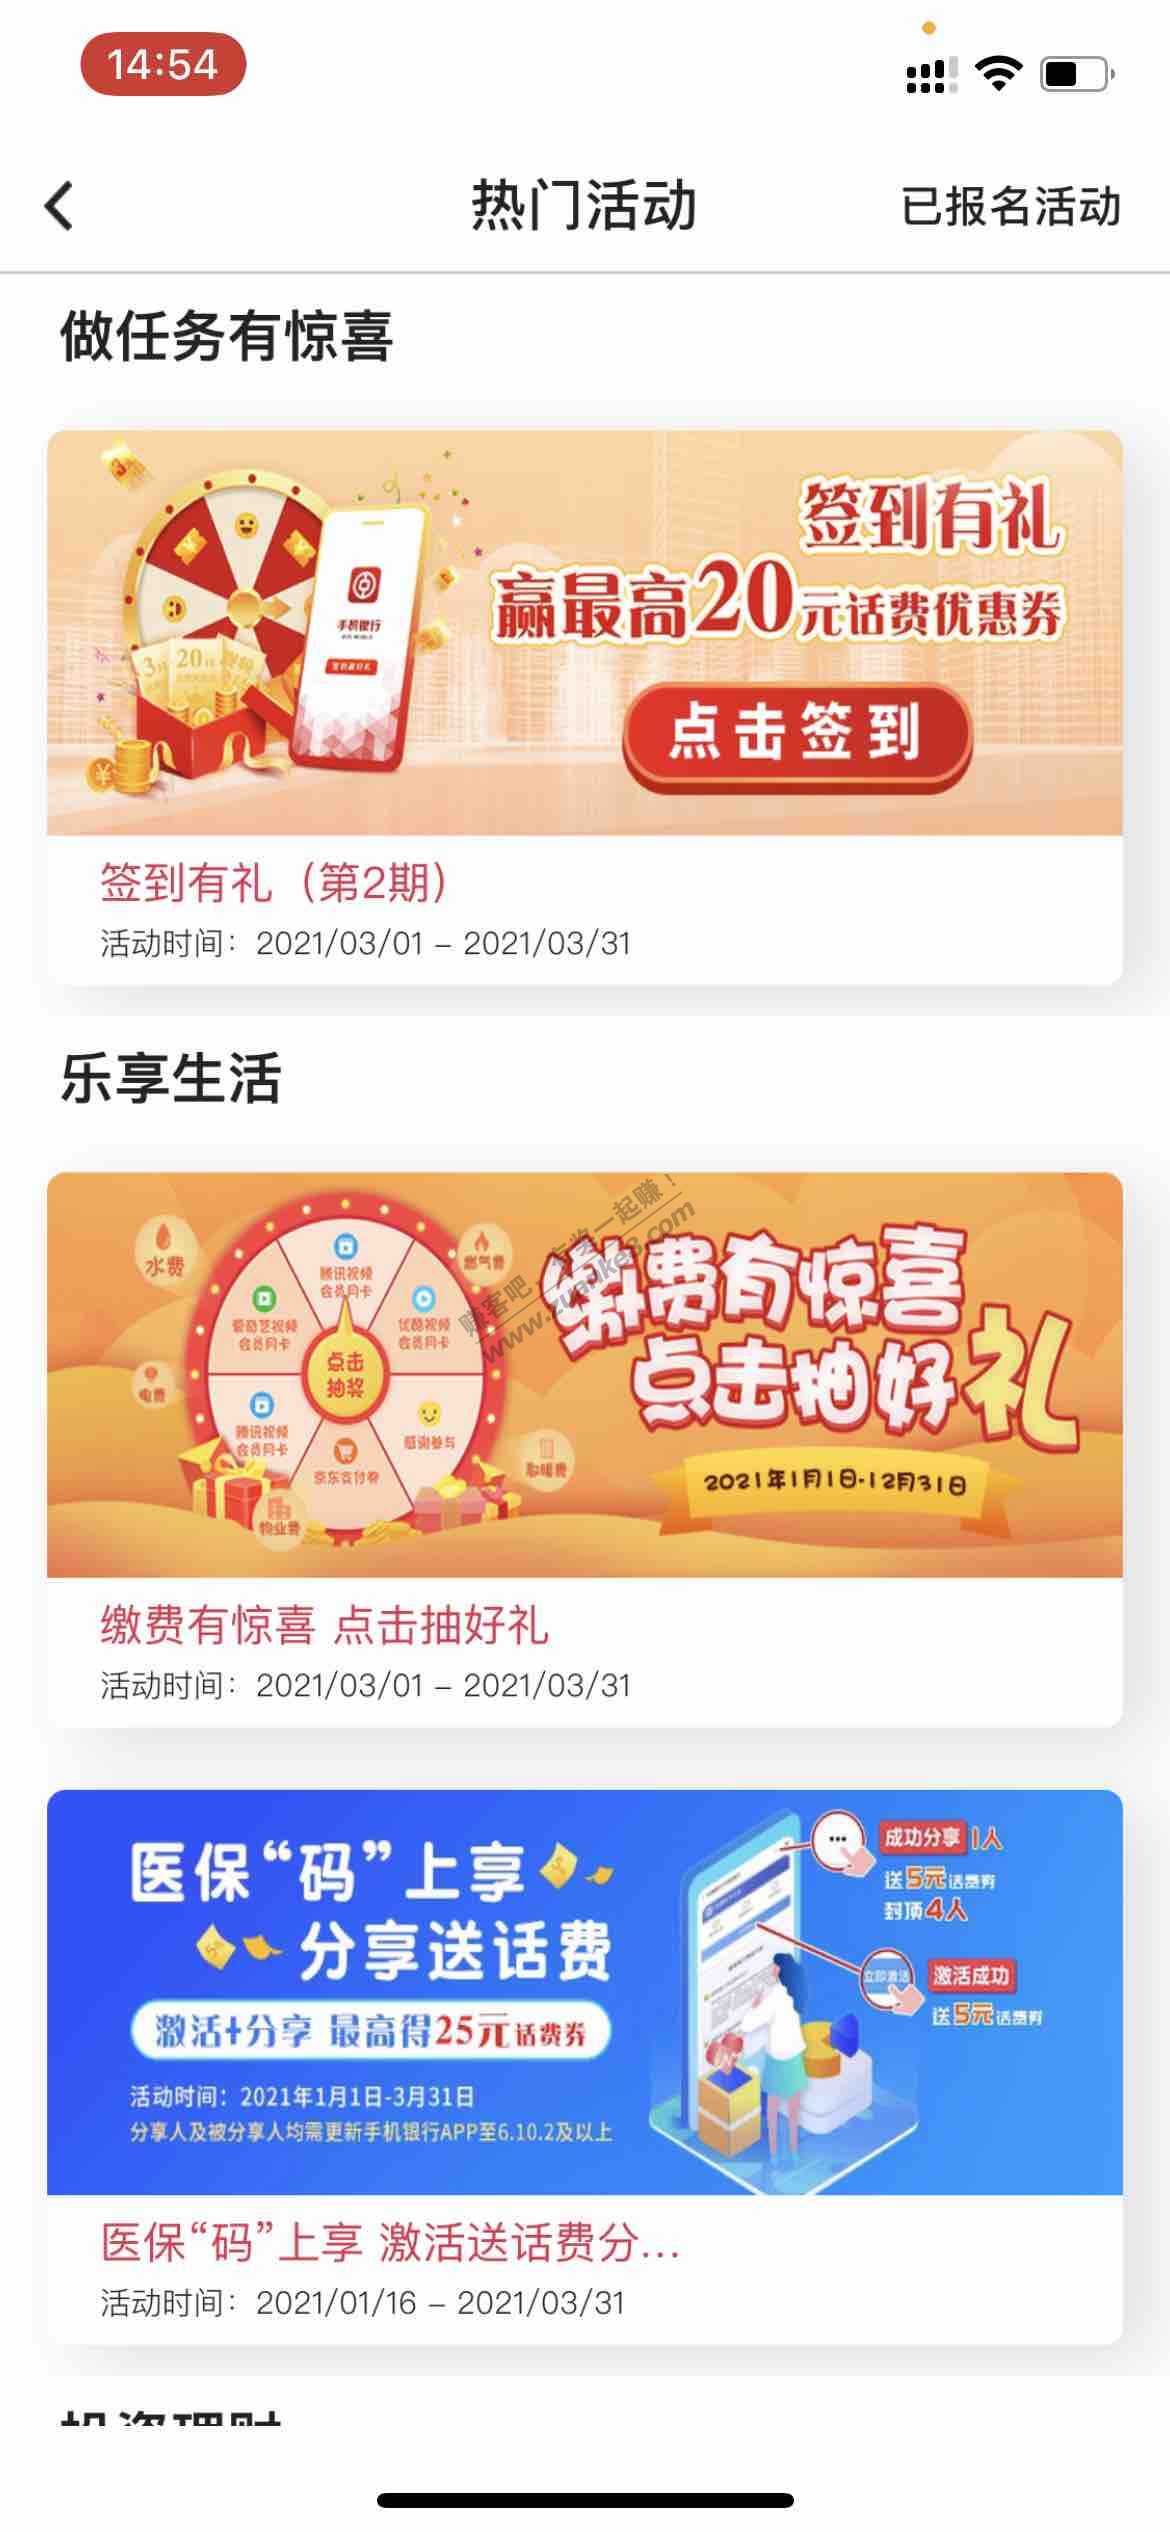 广东中国银行app签到抽最高20元话费卷-惠小助(52huixz.com)